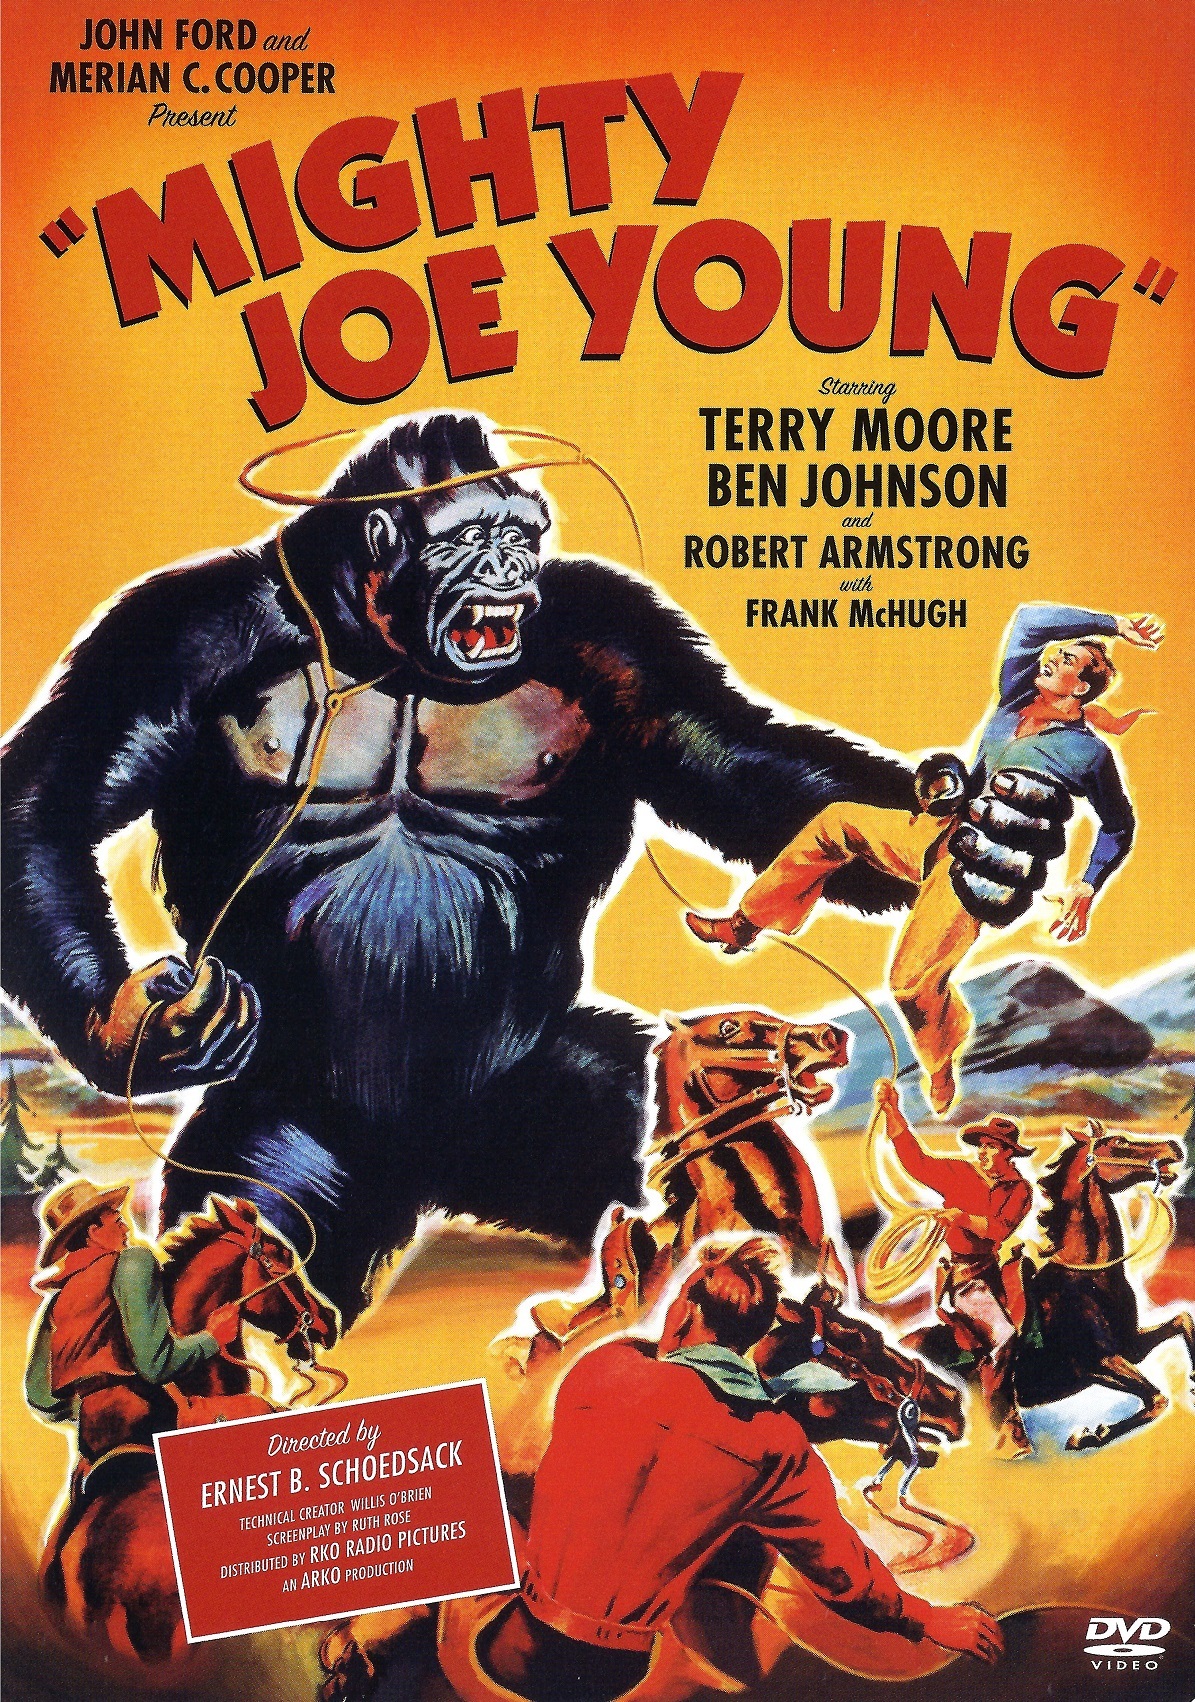 king - King Kong: 7-Movie Collection (1933-2017) Colección de 7 Películas de King Kong (1933-2017) [DTS AC3 5.1/2.0/1.0 + SUP/SRT/SUB + IDX] [Blu Ray-Rip] [DVD-RIP] 19754_front